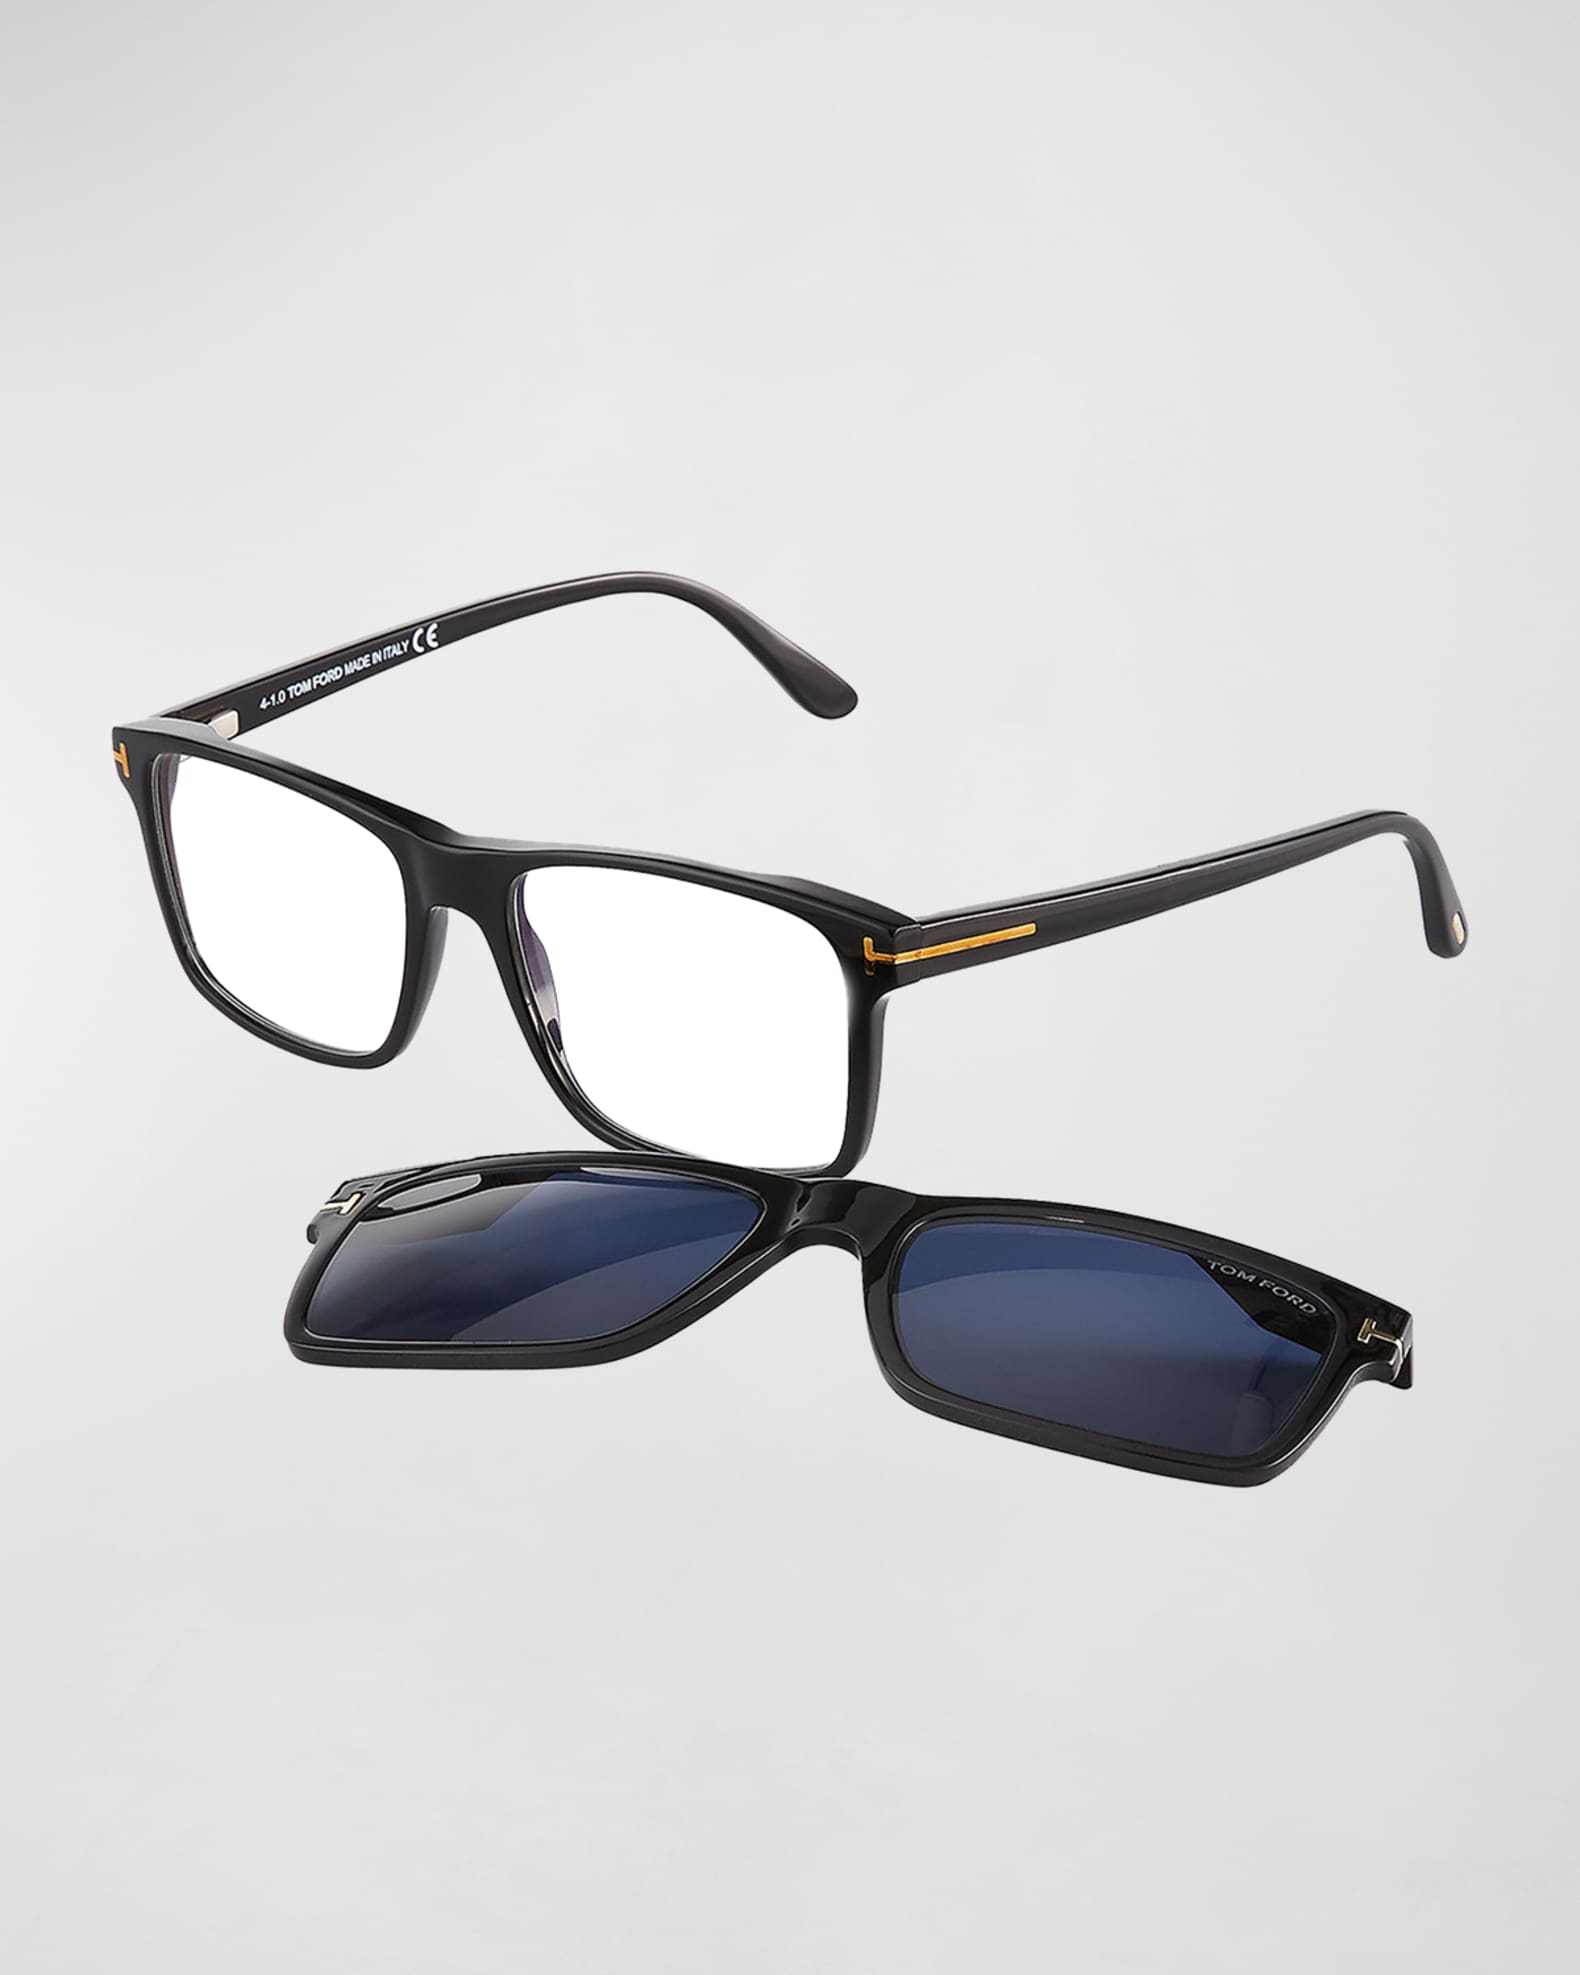 TOM FORD Men's FT5682-BM54 Blue Light Blocking Square Optical Glasses |  Neiman Marcus